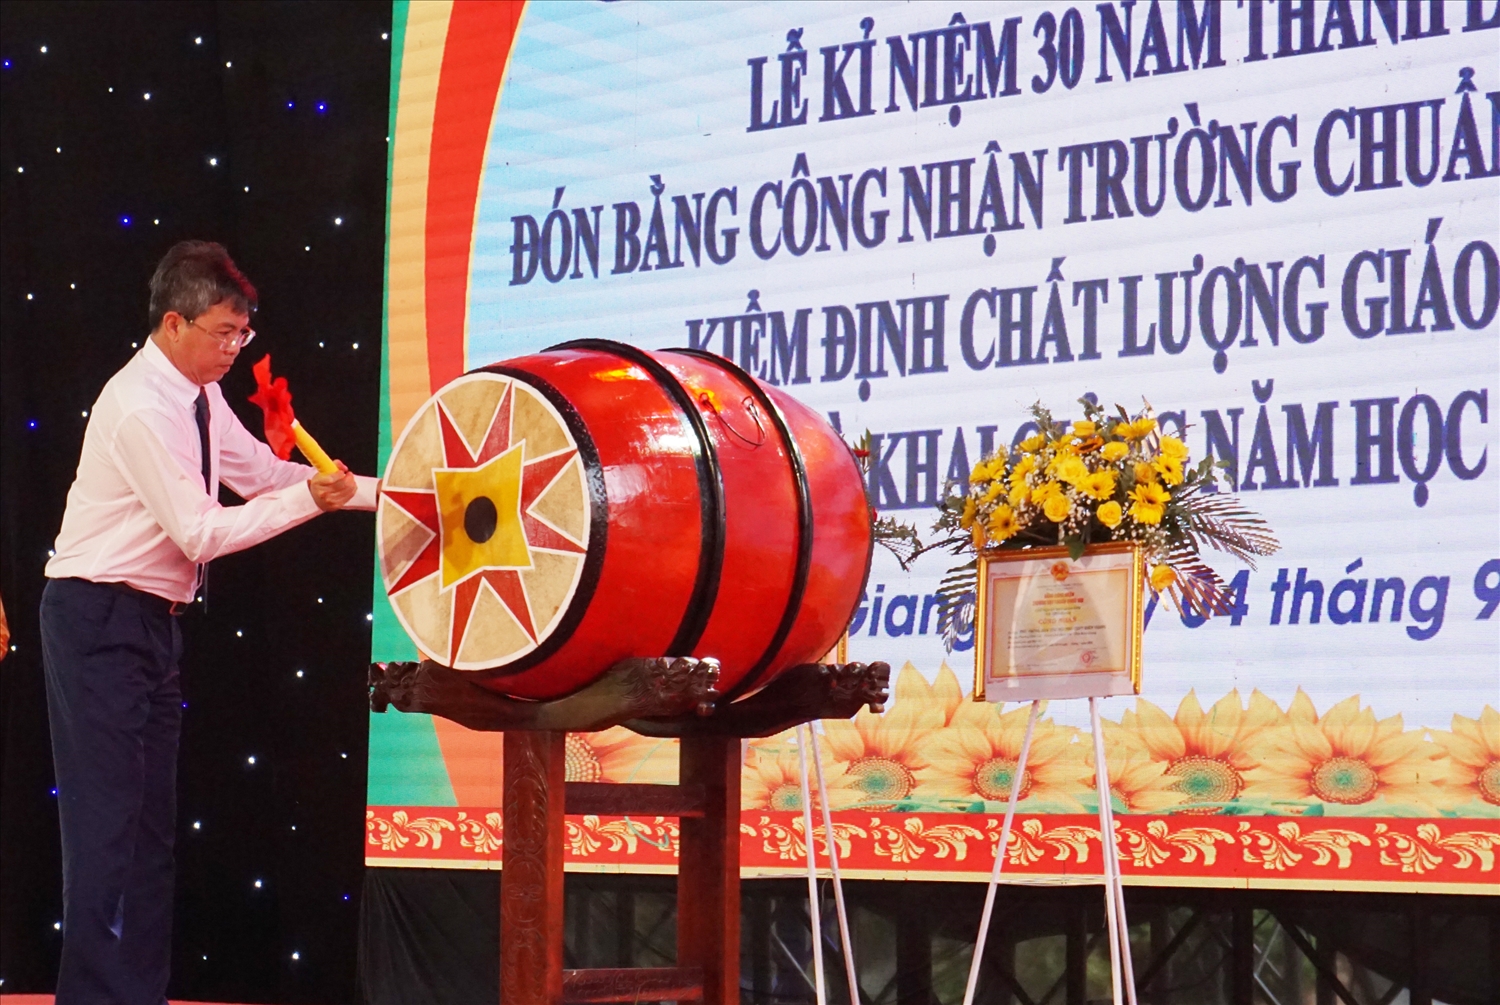 Ông Nguyễn Lưu Trung - Phó Chủ tịch UBND tỉnh Kiên Giang đánh trống thực hiện nghi thức khai giảng năm học mới